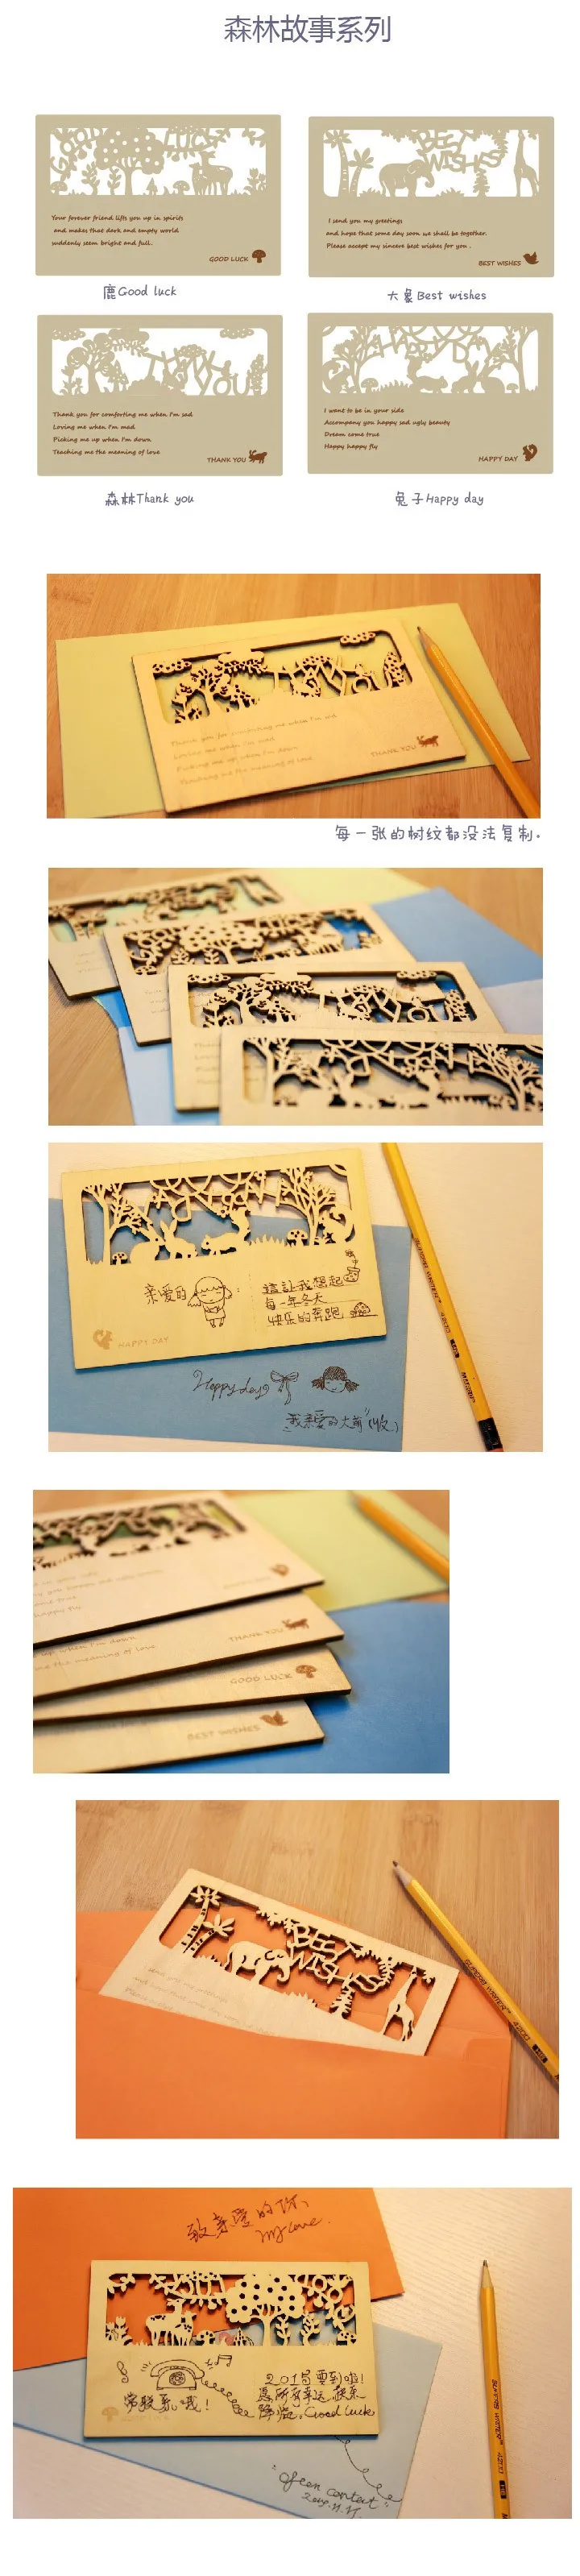 12 шт./лот 12 видов стилей рисования открытка открытки милые деревянные открытки мини карт показывающие благословение слова Рождество подарочная карта